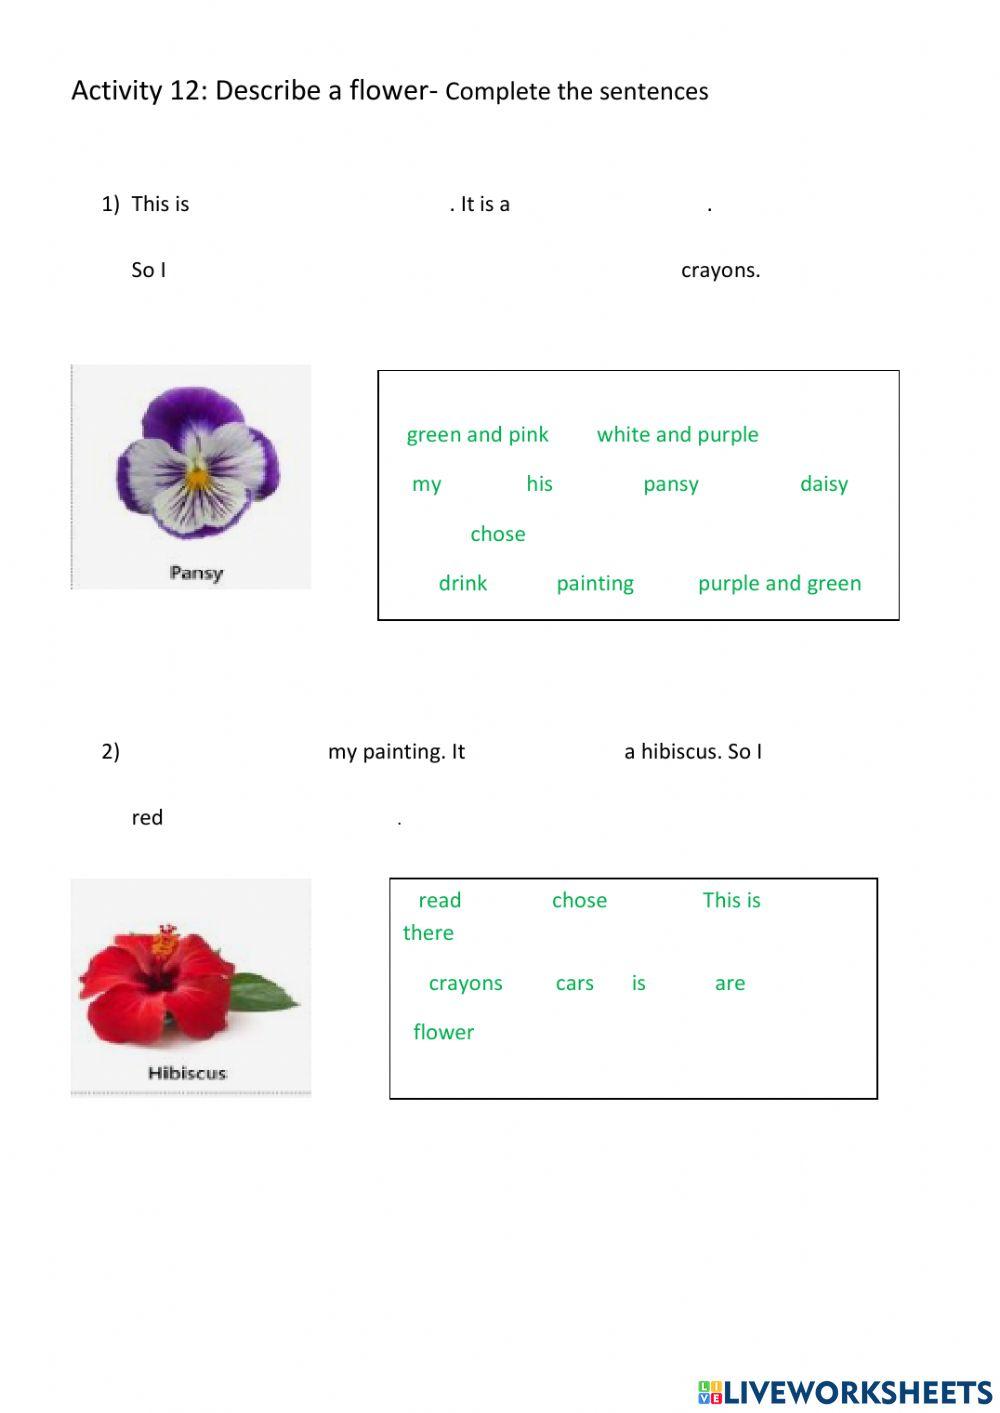 Flowers' description